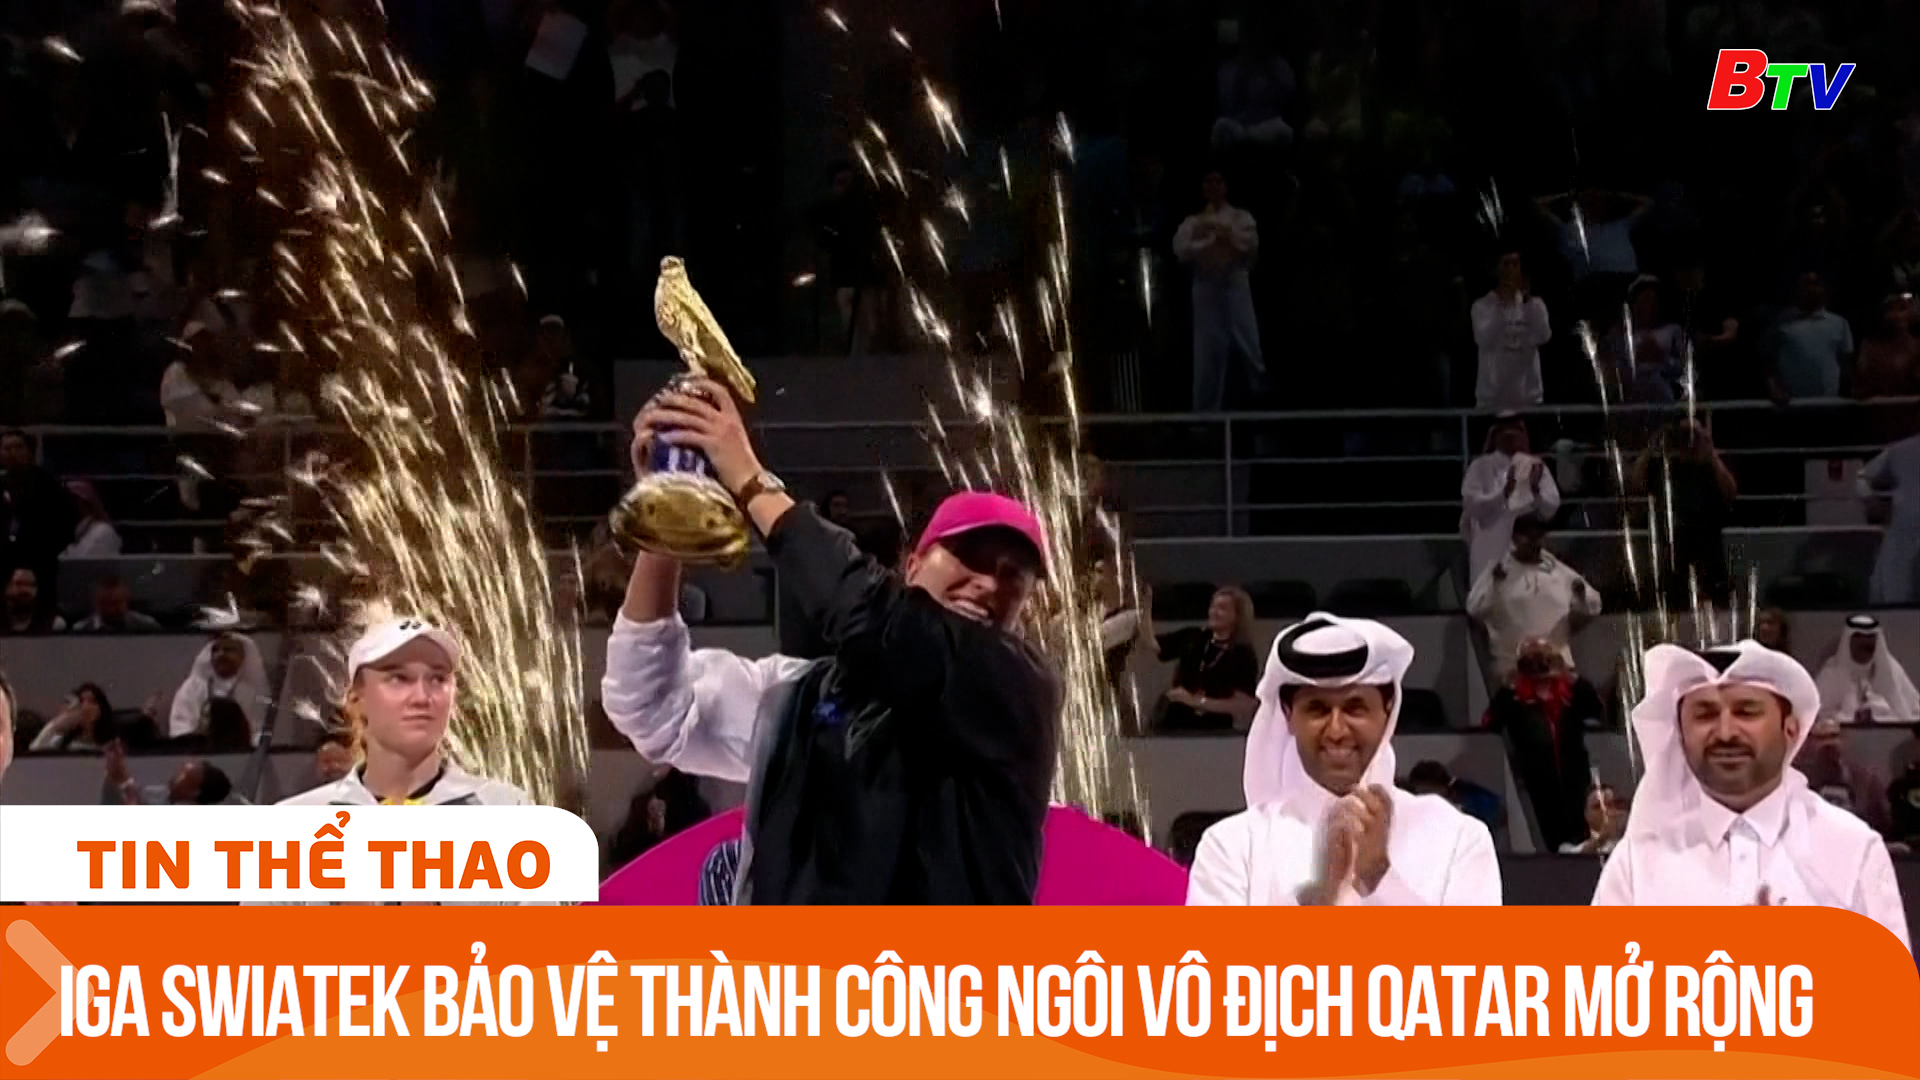 Iga Swiatek bảo vệ thành công ngôi vô địch Giải quần vợt Qatar mở rộng 2024 | Tin Thể thao 24h	